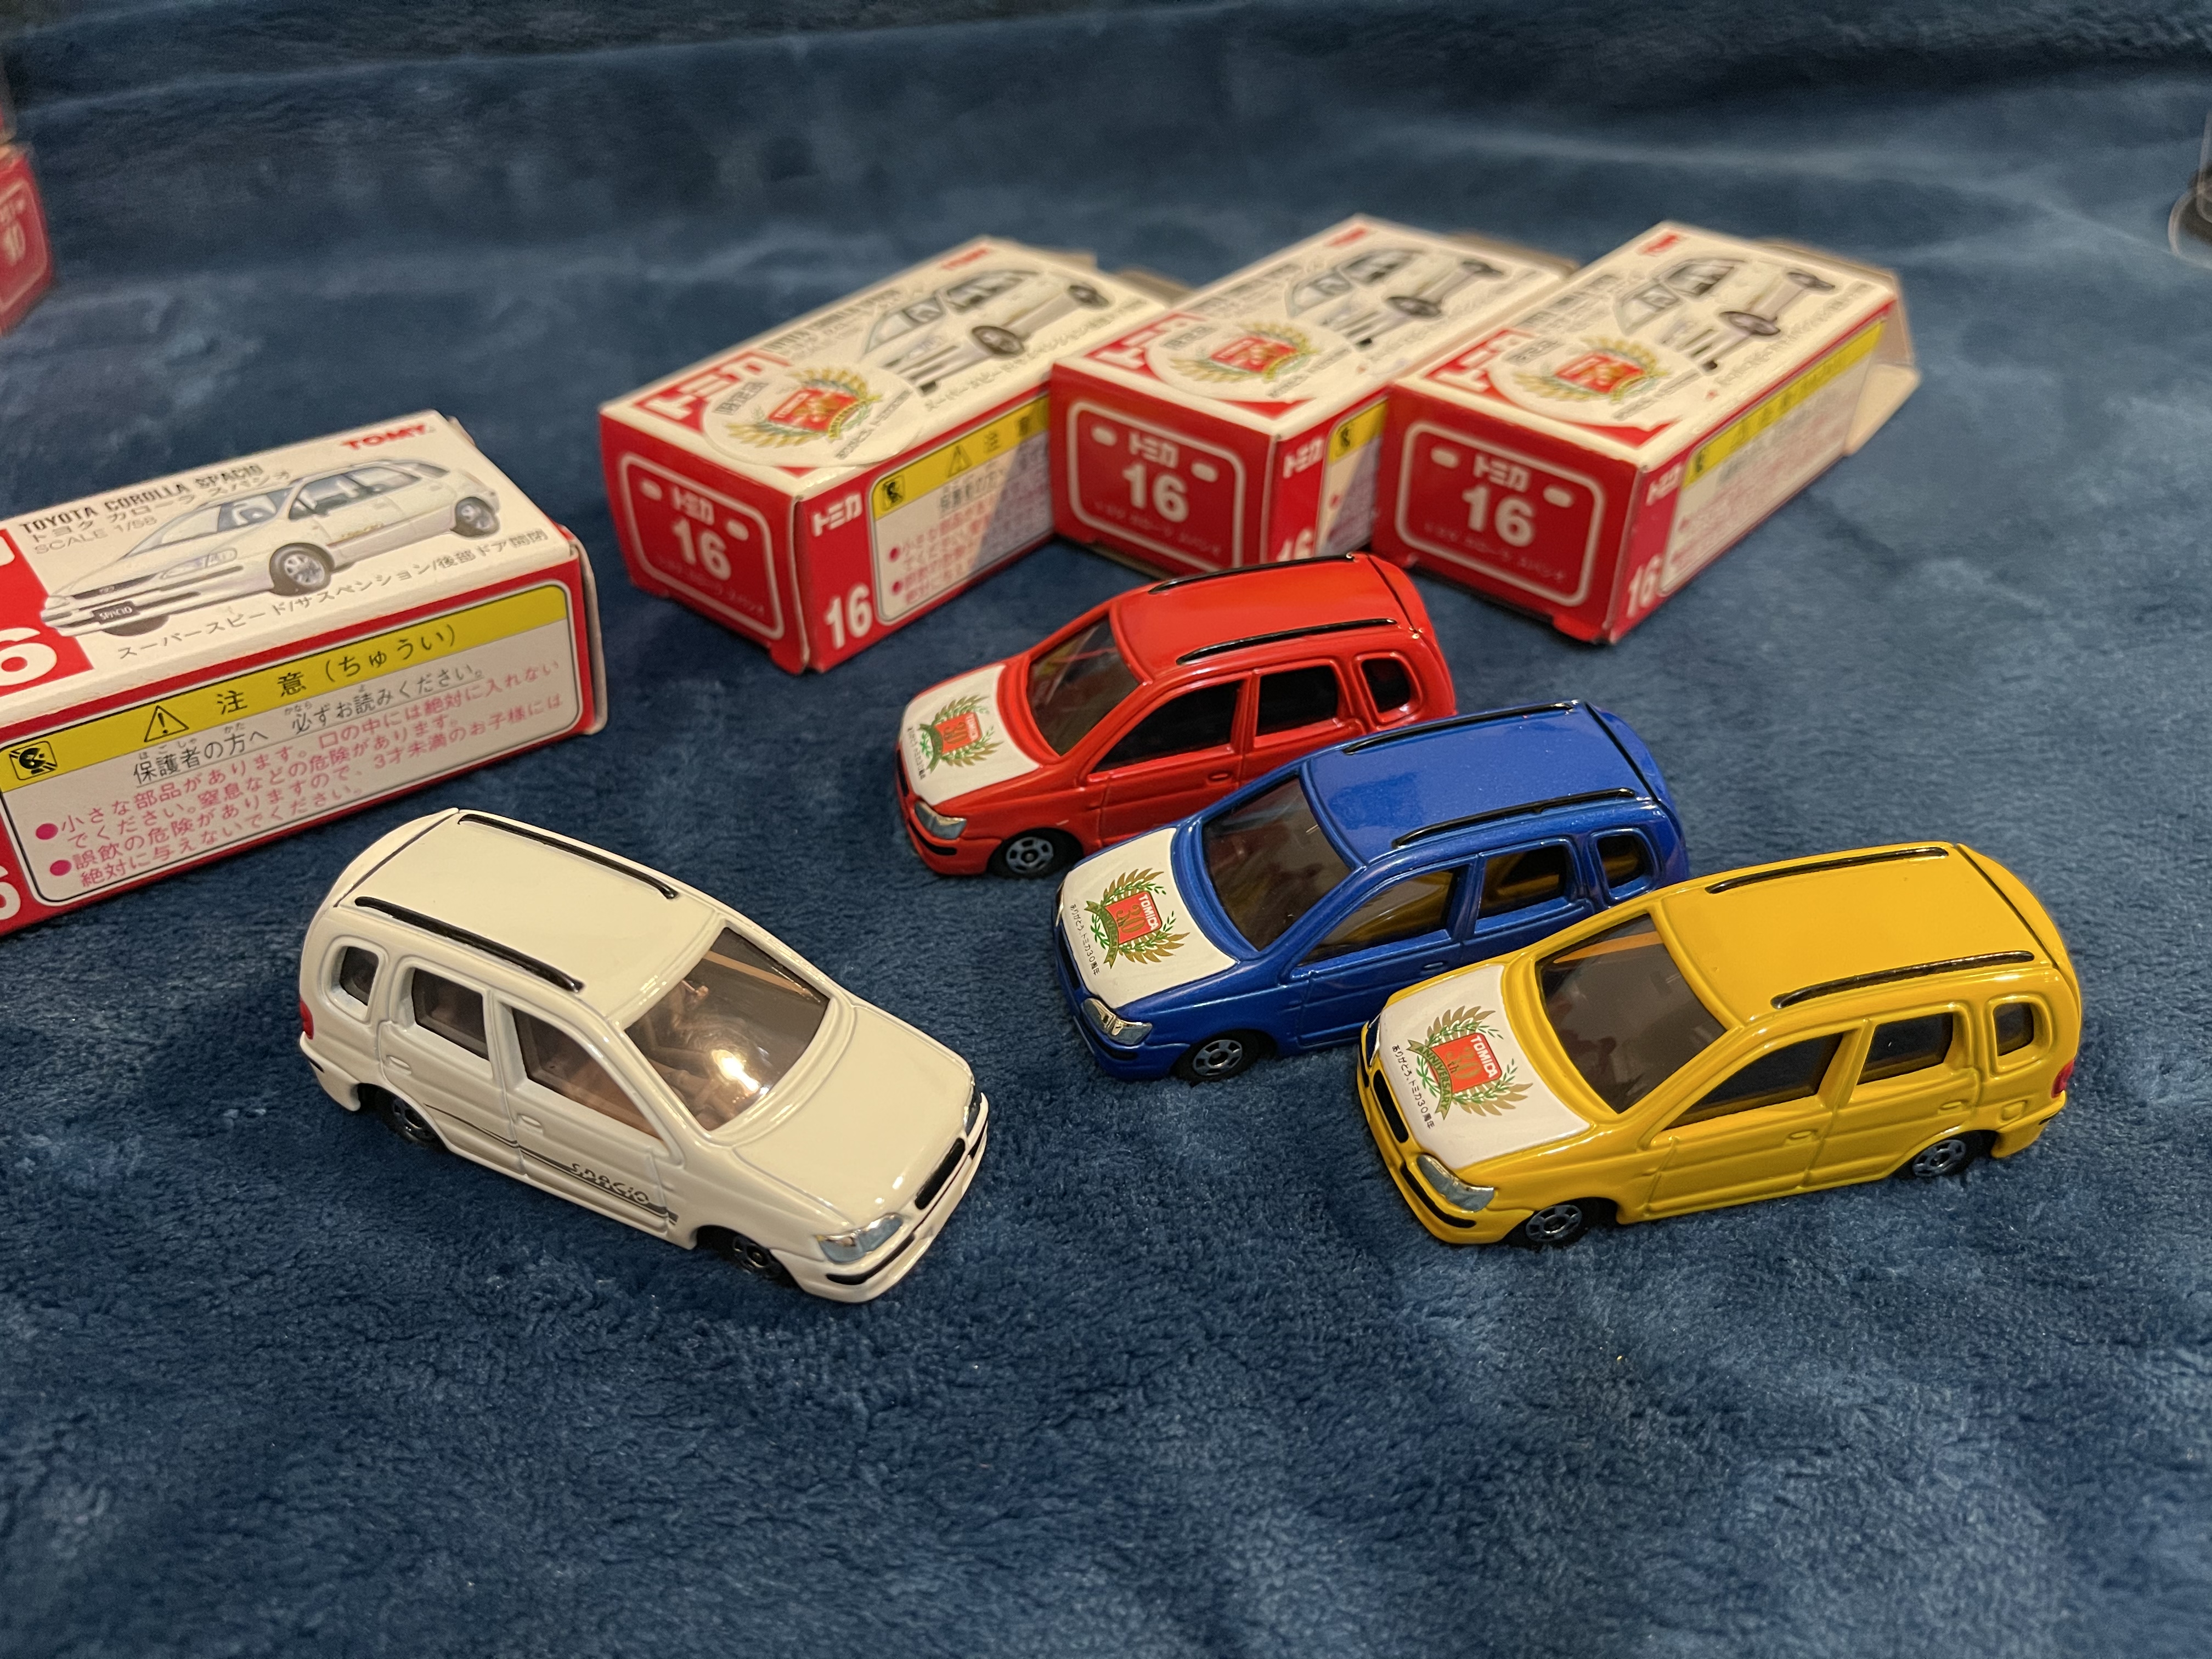 16-3存在限定品帖的盒子與車型